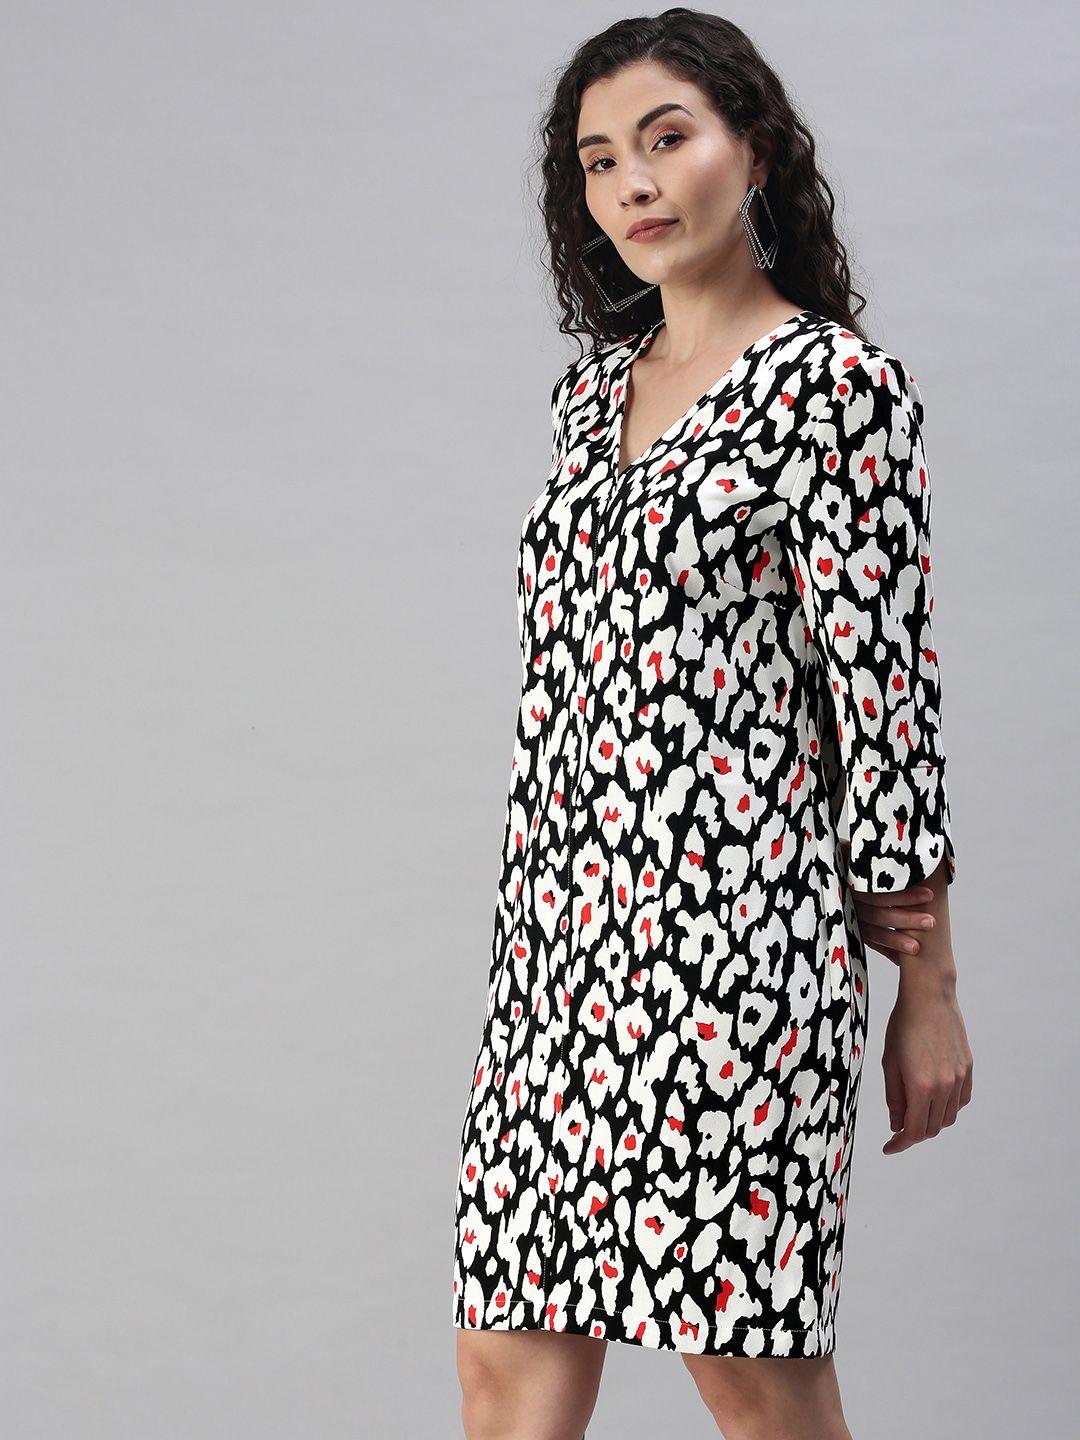 marks & spencer women black & white printed v neck a-line dress